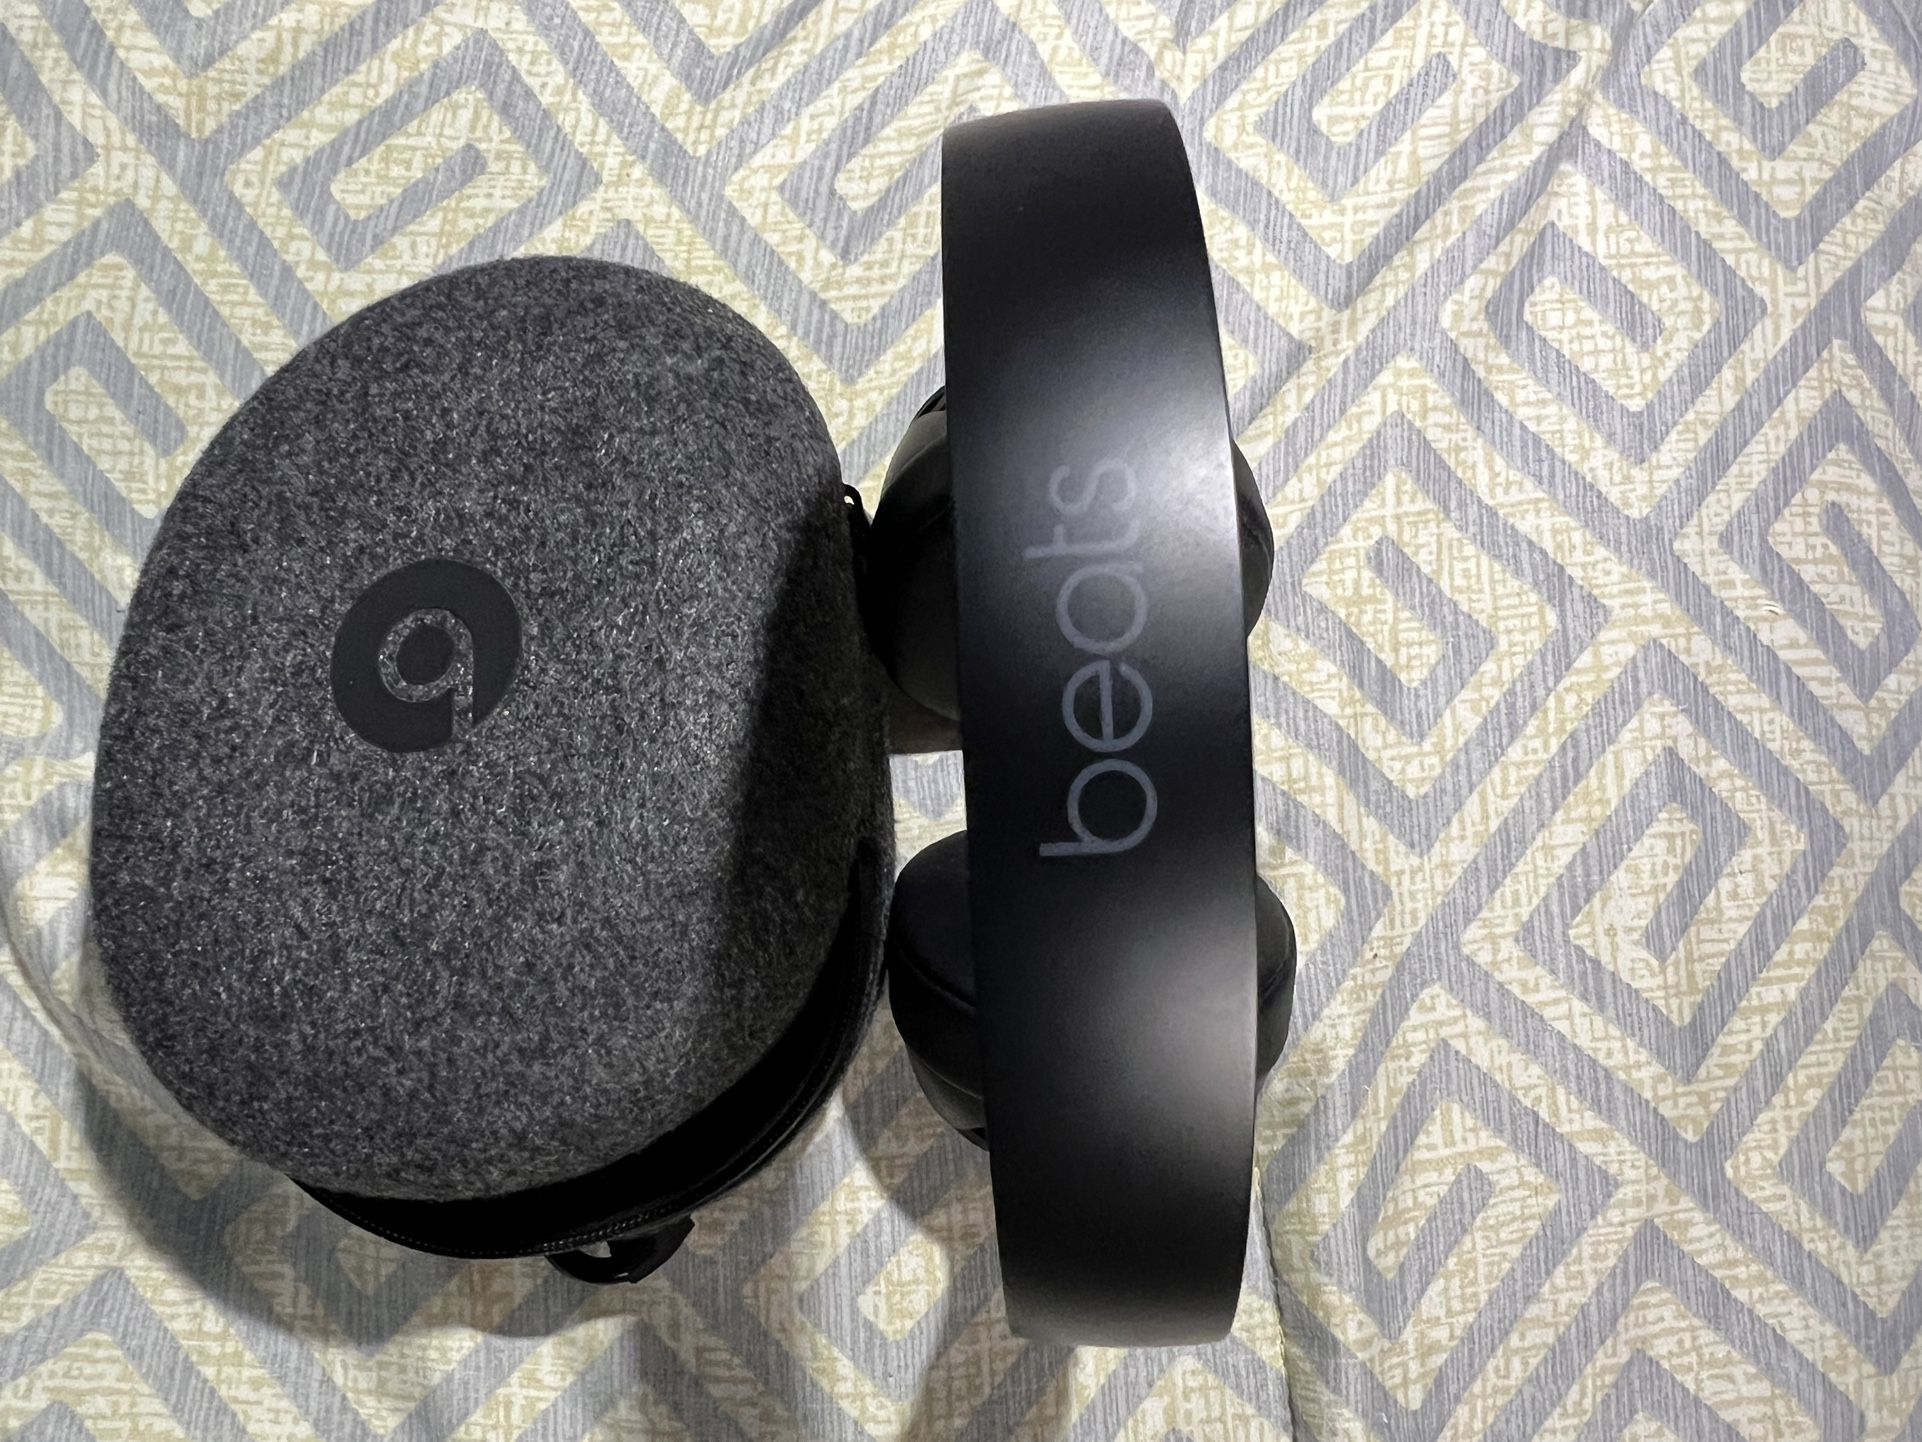 Apple Beats Solo Pro Wireless Noise Cancelling On-Ear Headphones 